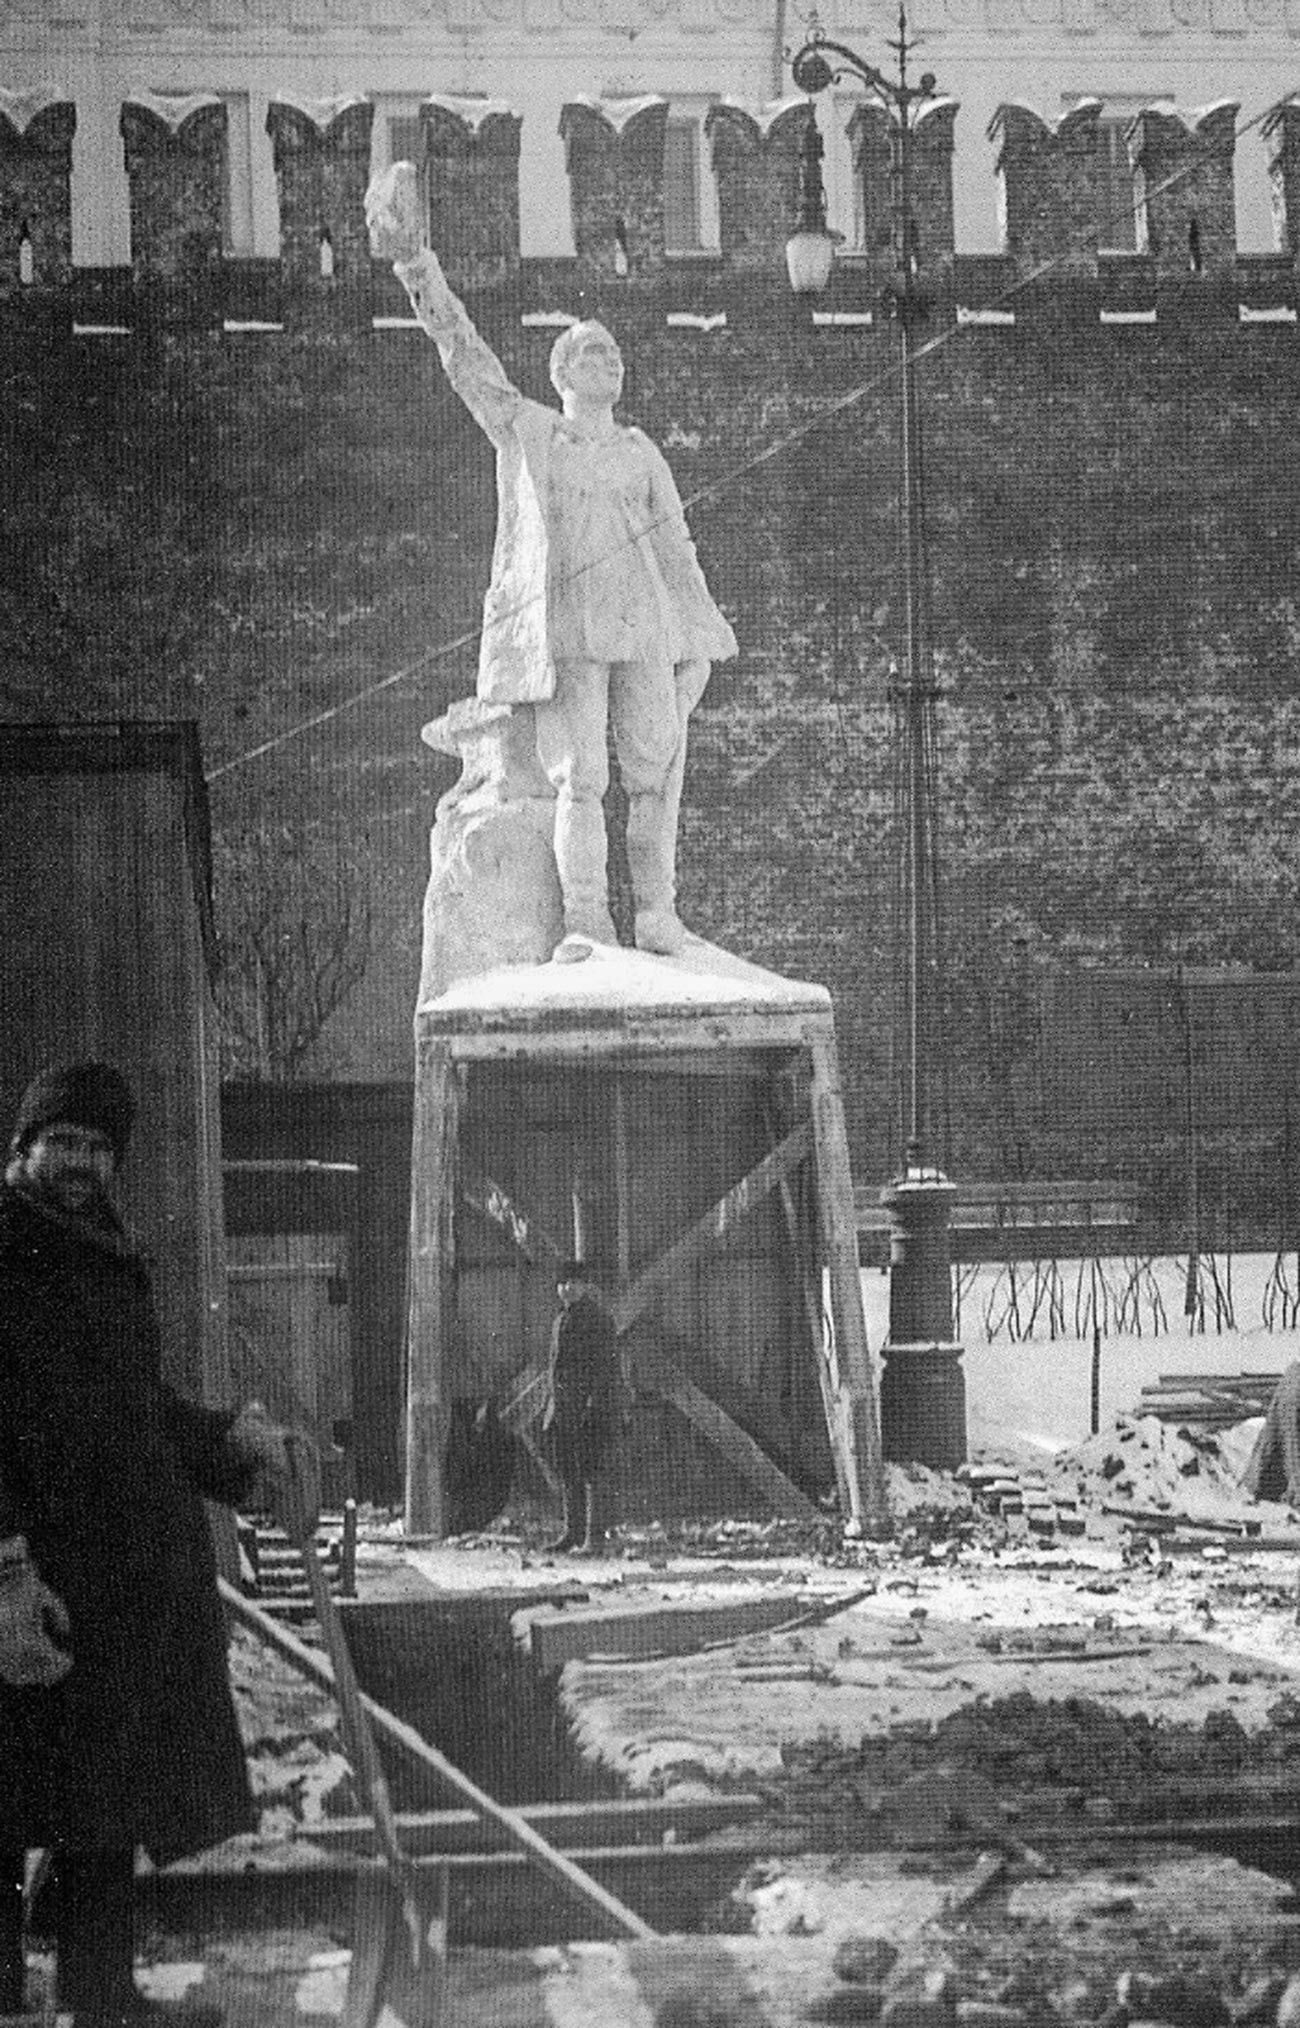 Spomenik delavcu pred njegovim uničenjem.
